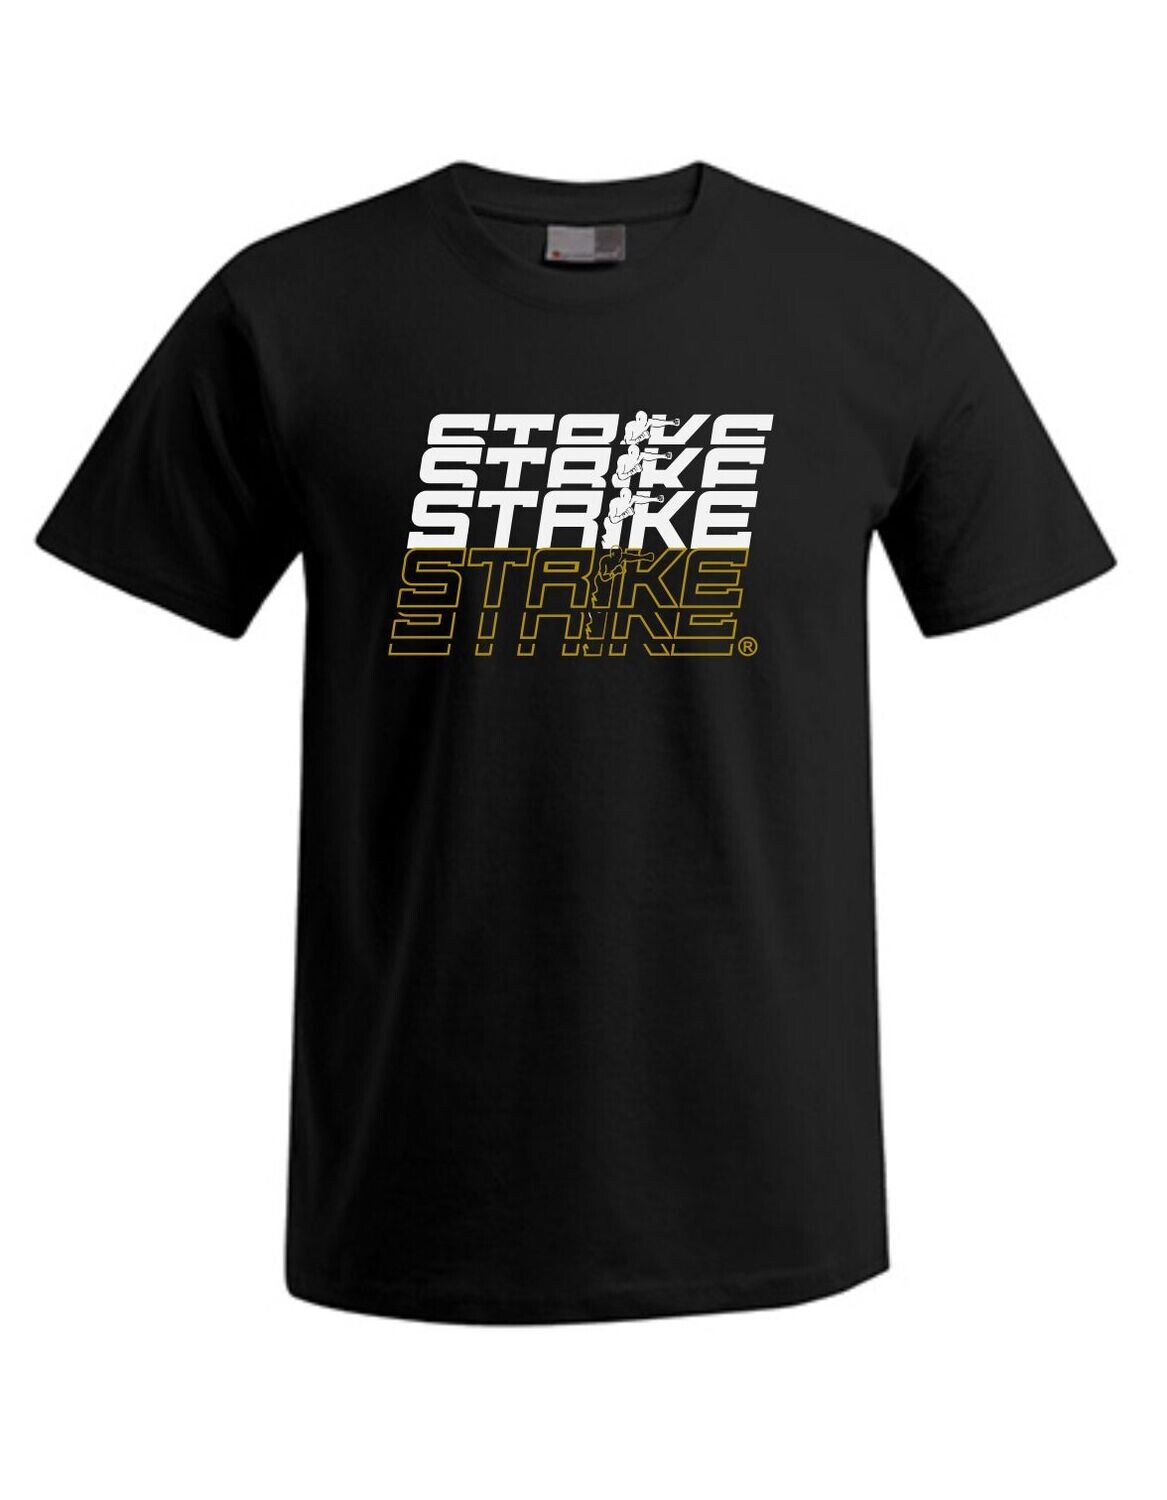 Kinder T-Shirt Strike Gym Multi, Farben: schwarz/weiss/gold